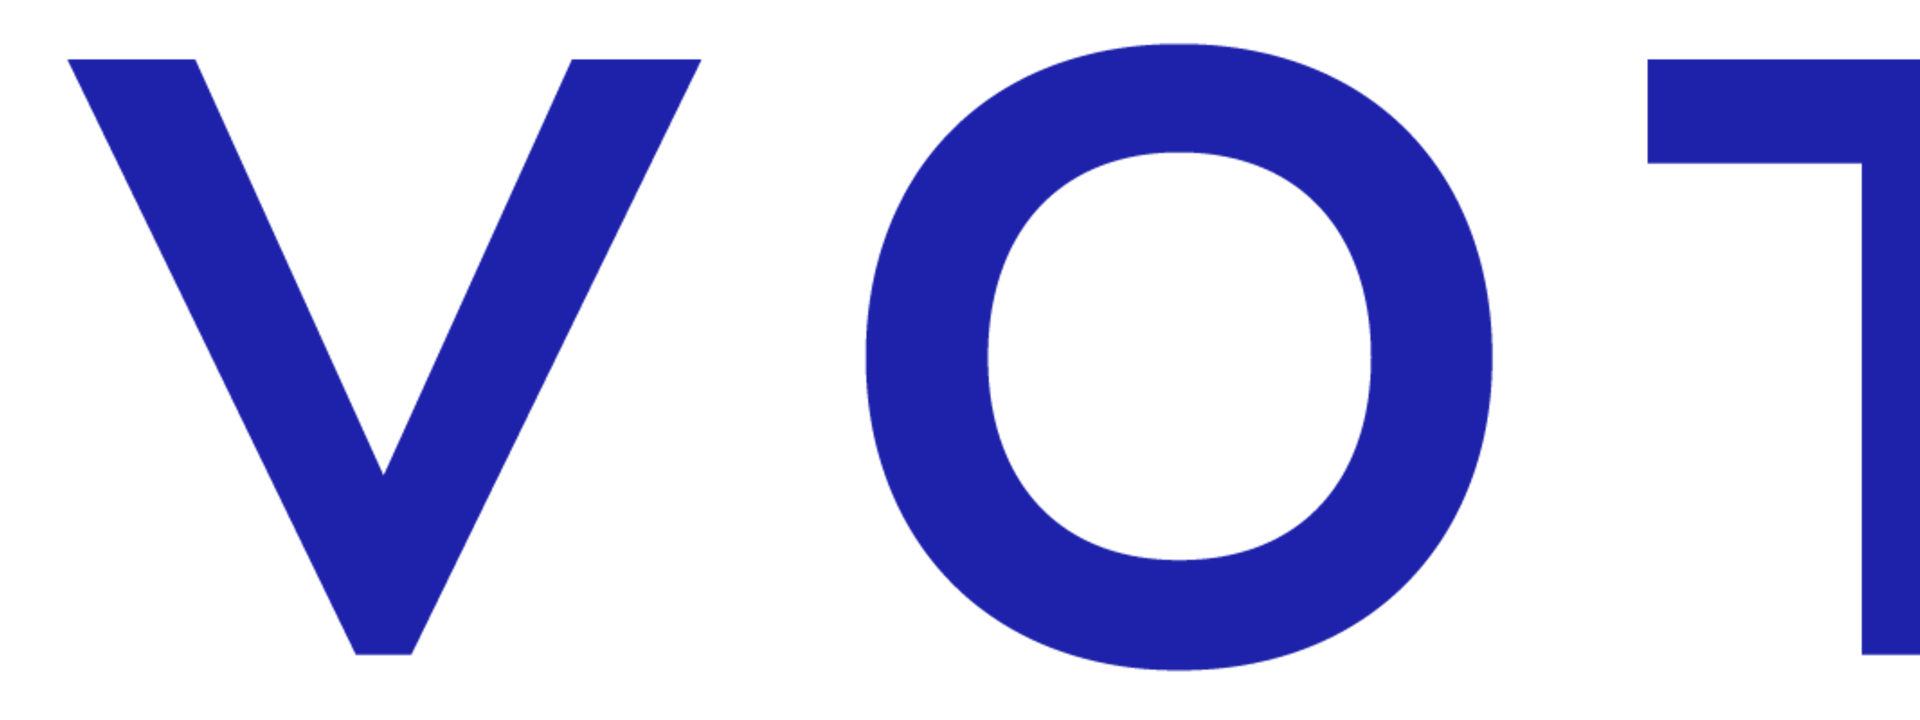 novotel_logo_2019_rvb_4.png